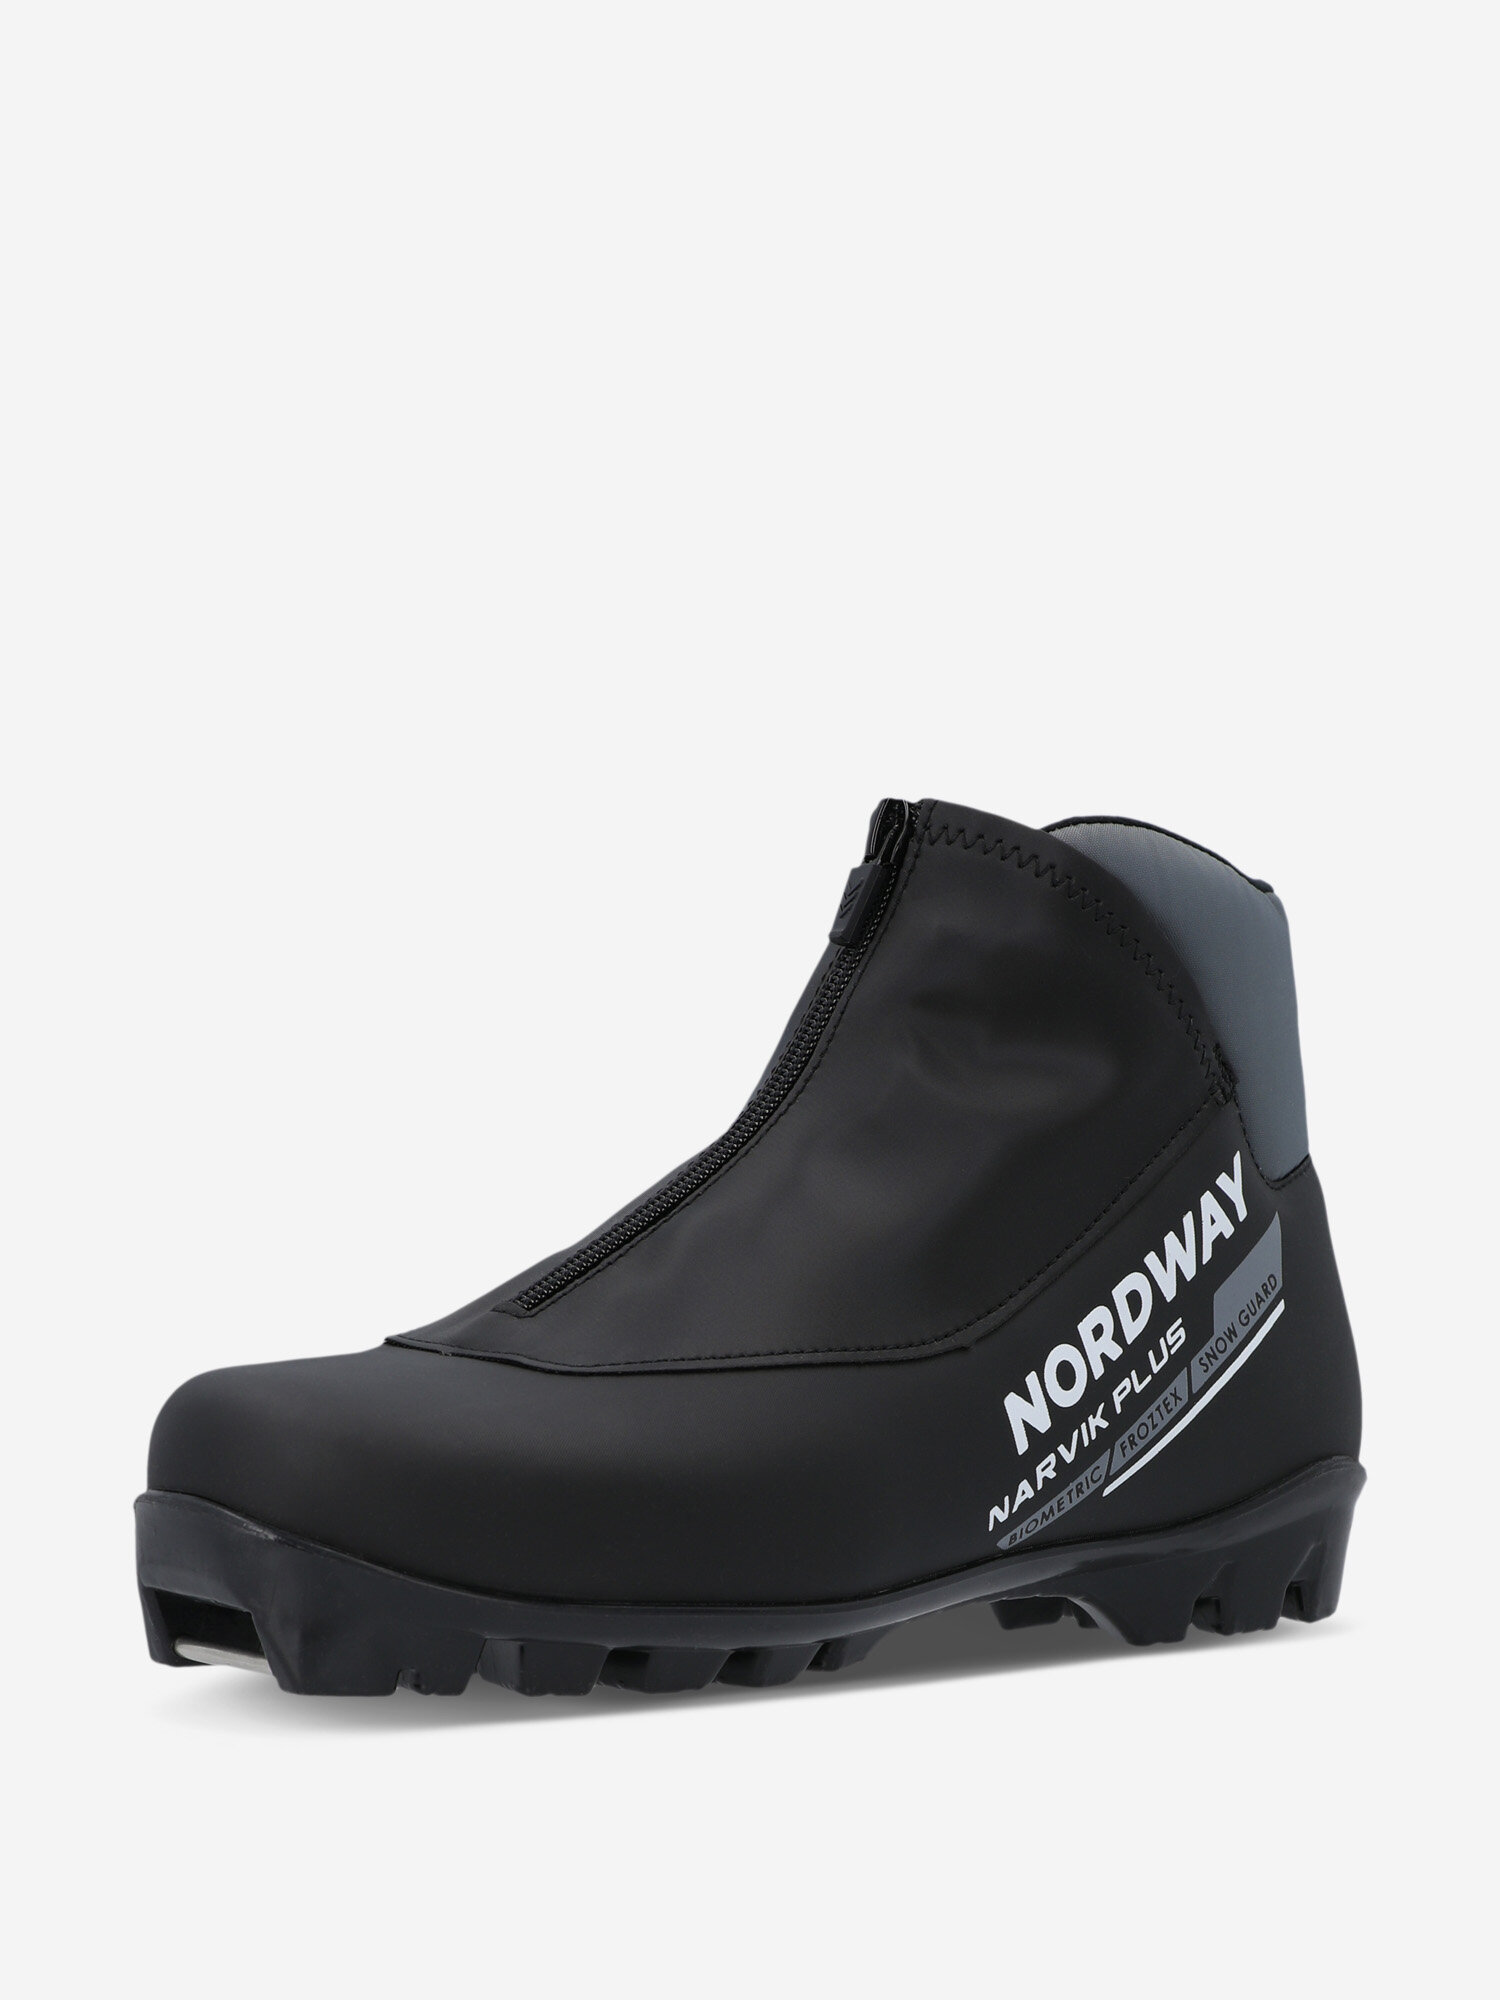 Ботинки для беговых лыж Nordway Narvik Plus NNN Черный; RUS: 42, Ориг: 43